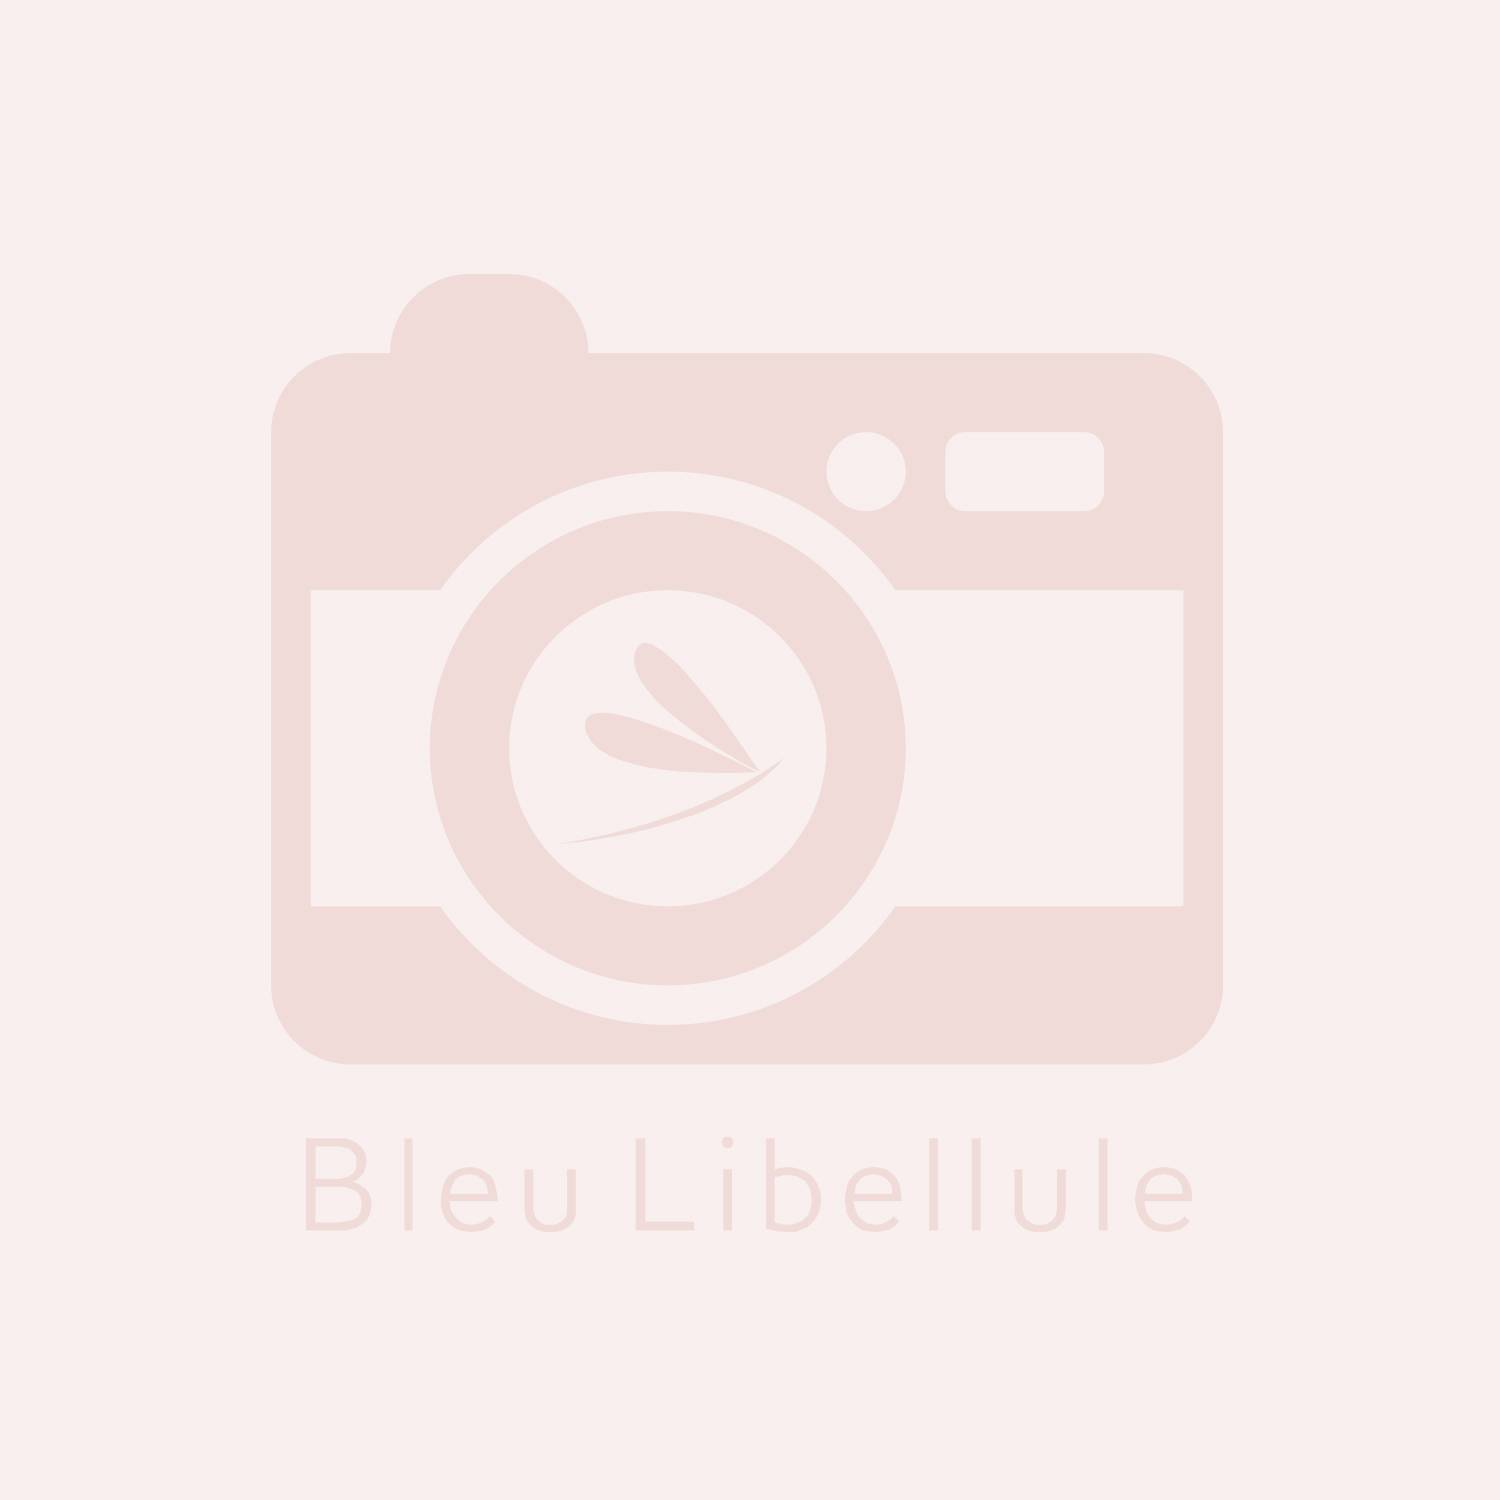 Bleu Libellule Eau de parfum Femme - Romantique 50ML, Femme